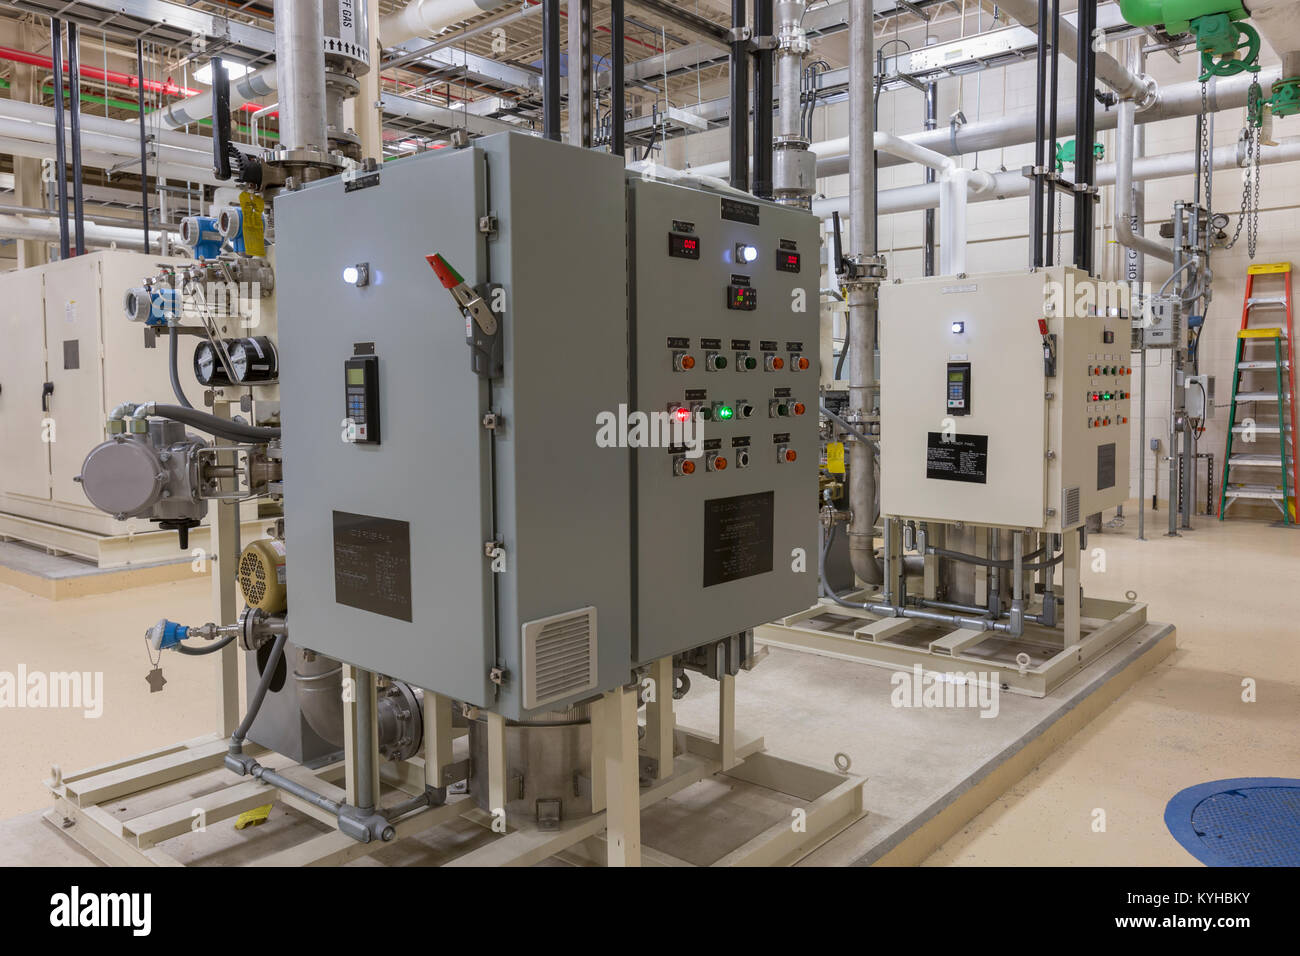 Impianto di trattamento acque trattamento chimico attrezzature pannelli di controllo Foto Stock